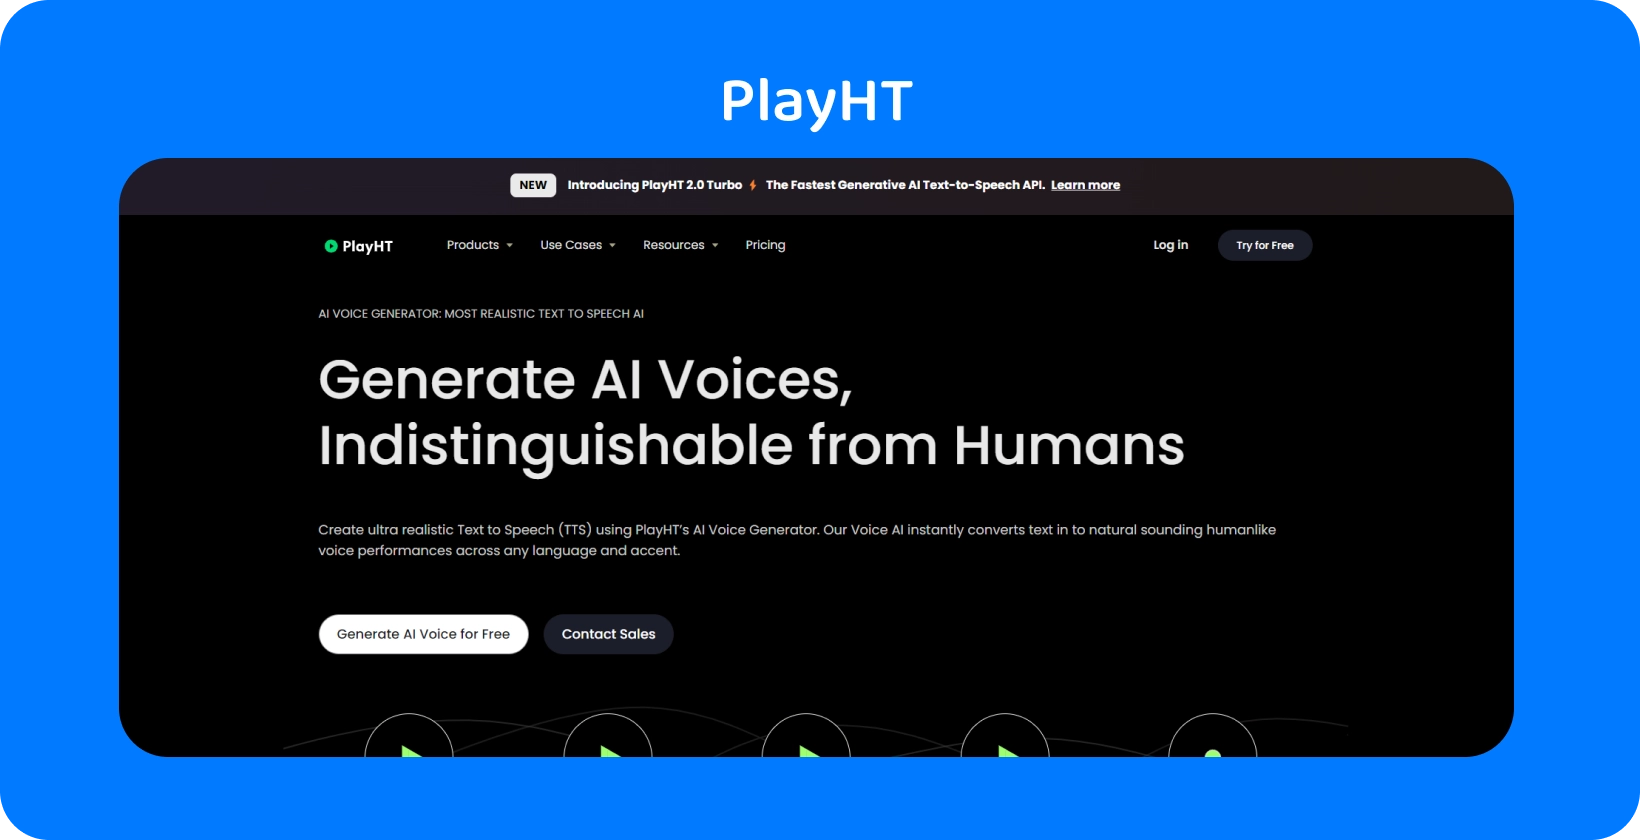 Το PlayHT προσφέρει φωνές που δημιουργούνται από AI σχεδόν δυσδιάκριτες από την ανθρώπινη ομιλία για ανάγκες μετατροπής κειμένου σε ομιλία.